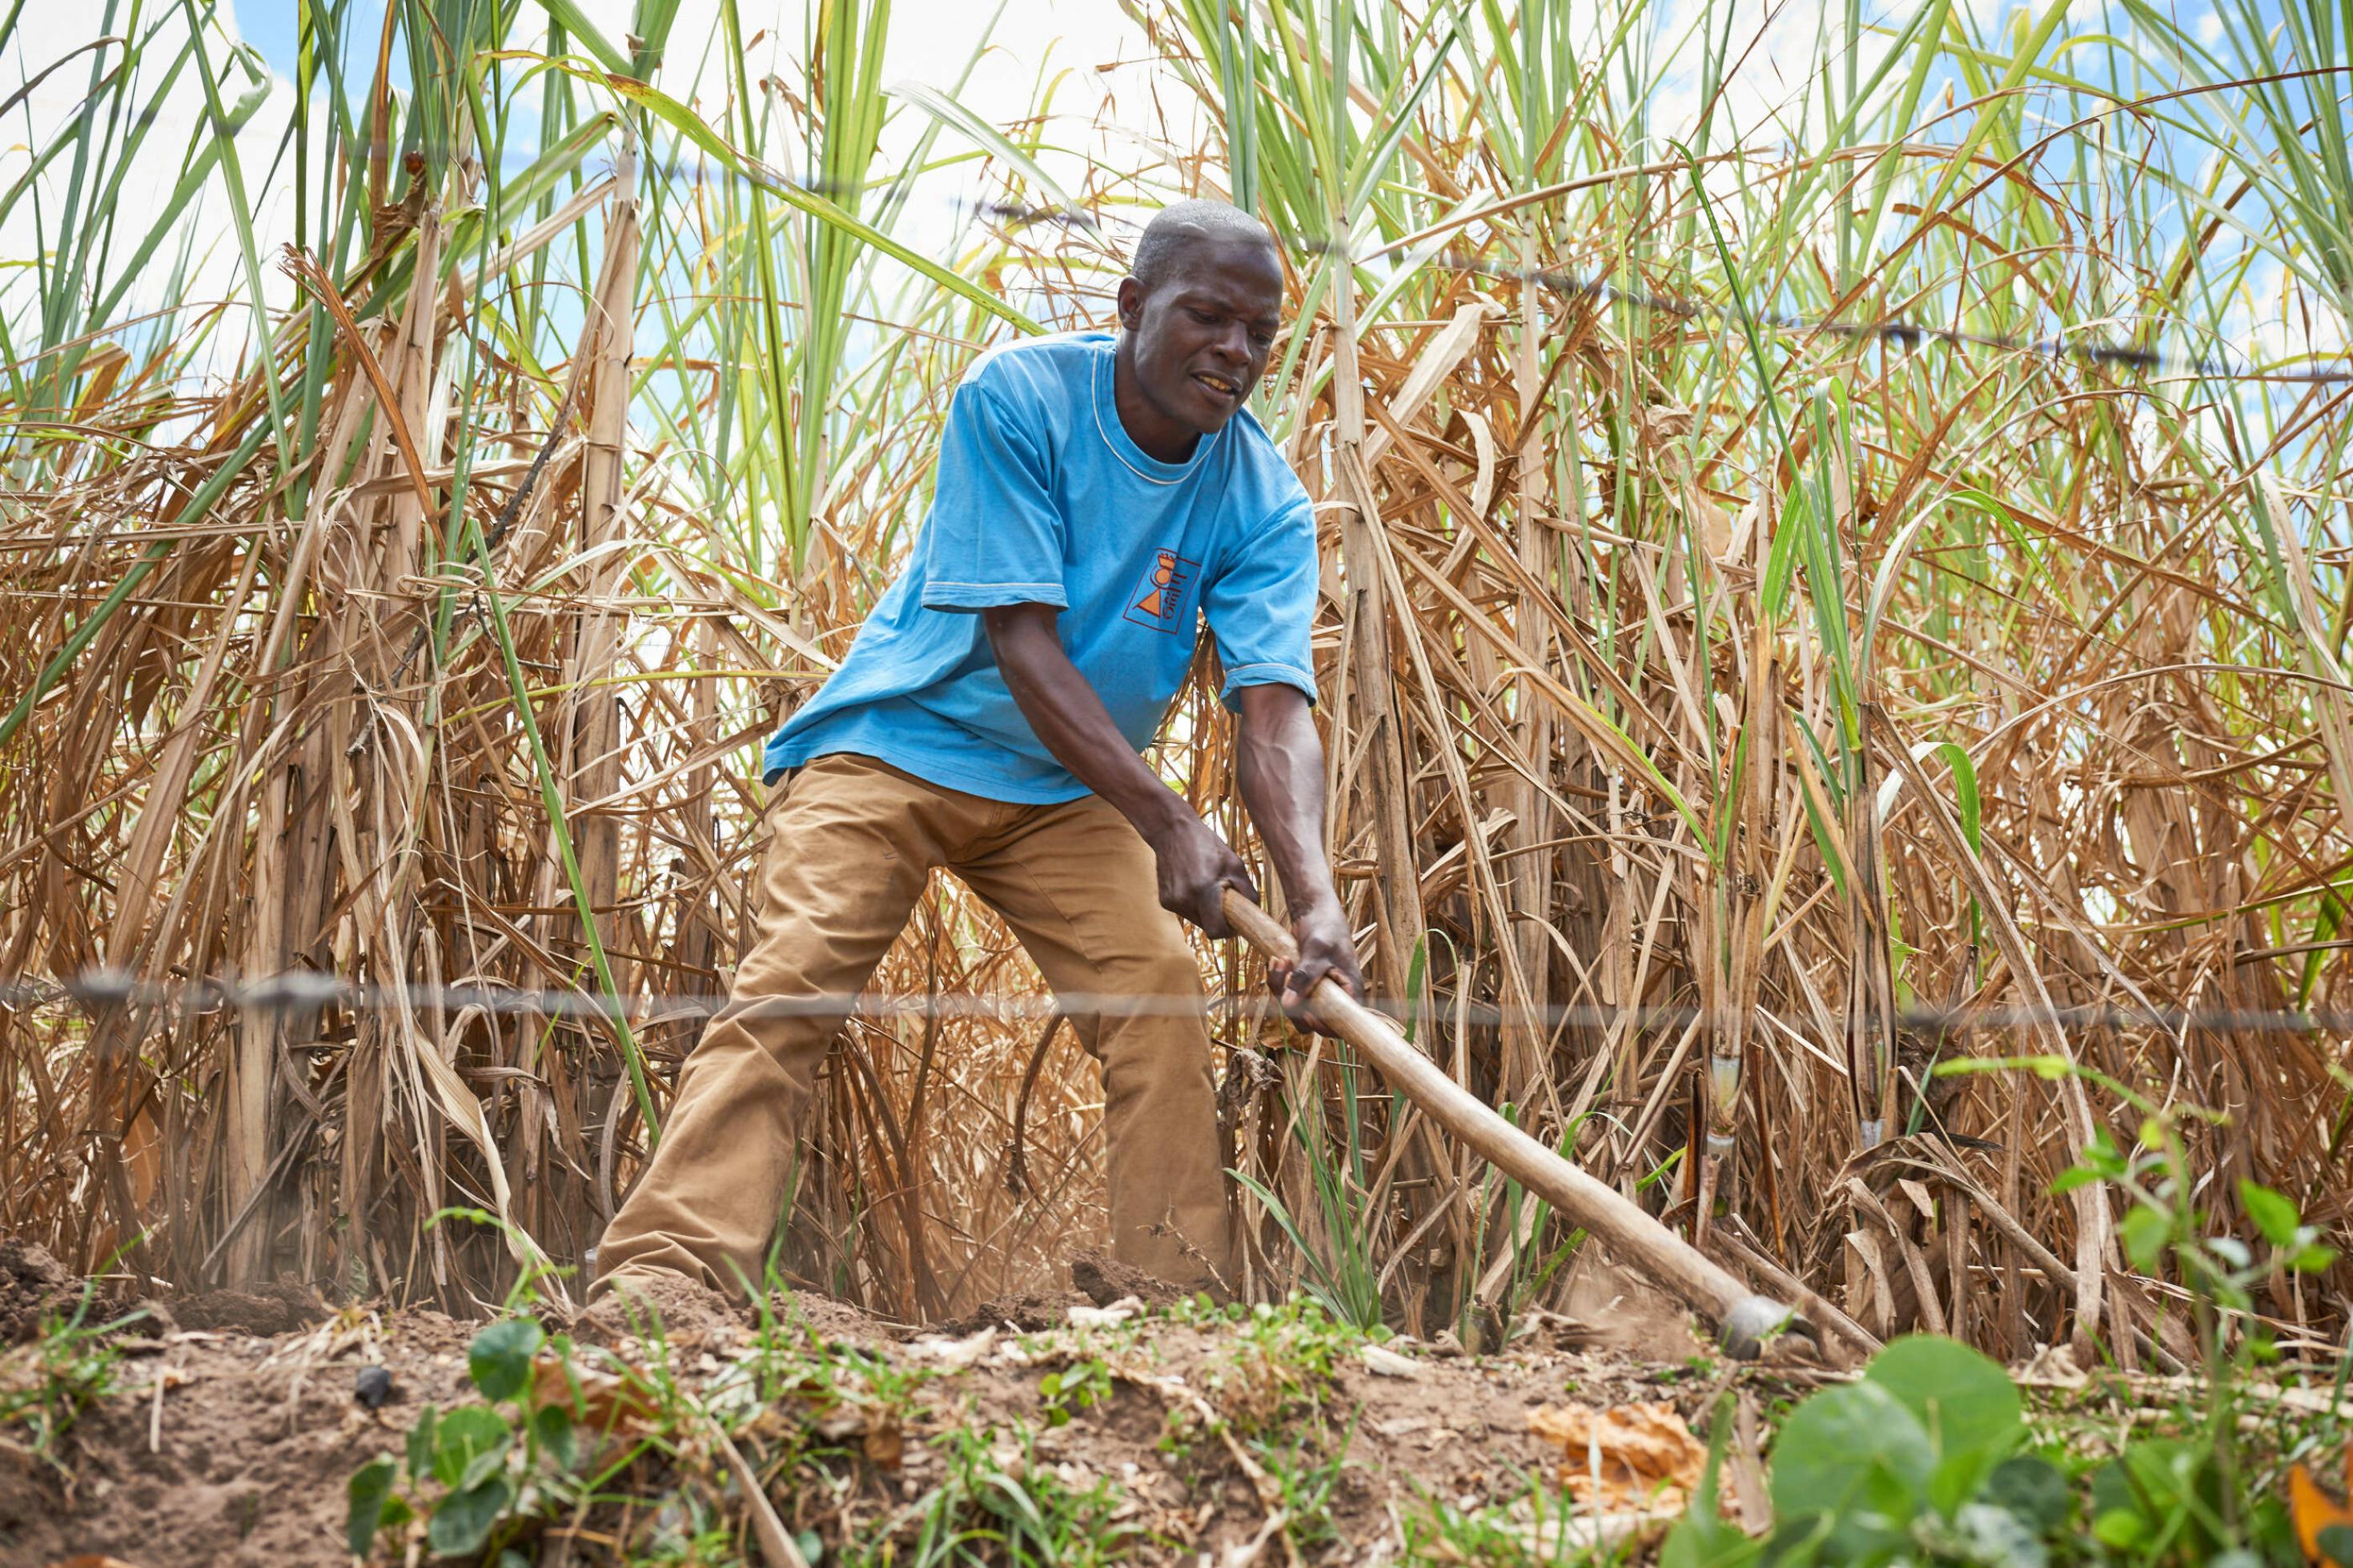 Ein Bauer in Kenia bearbeitet mit einer Hacke den Boden eines kleinen Maisfeldes.Er trägt ein blaues Hemd und eine braune Hose. Die hacke hat einen langen Holzstiel. man kann sich vorstellen, dass die arbeit sehr anstrengend ist in der Hitze. Hinter dem Mann wachsen hohe Maispflanzen, die etwas trocken aussehen.